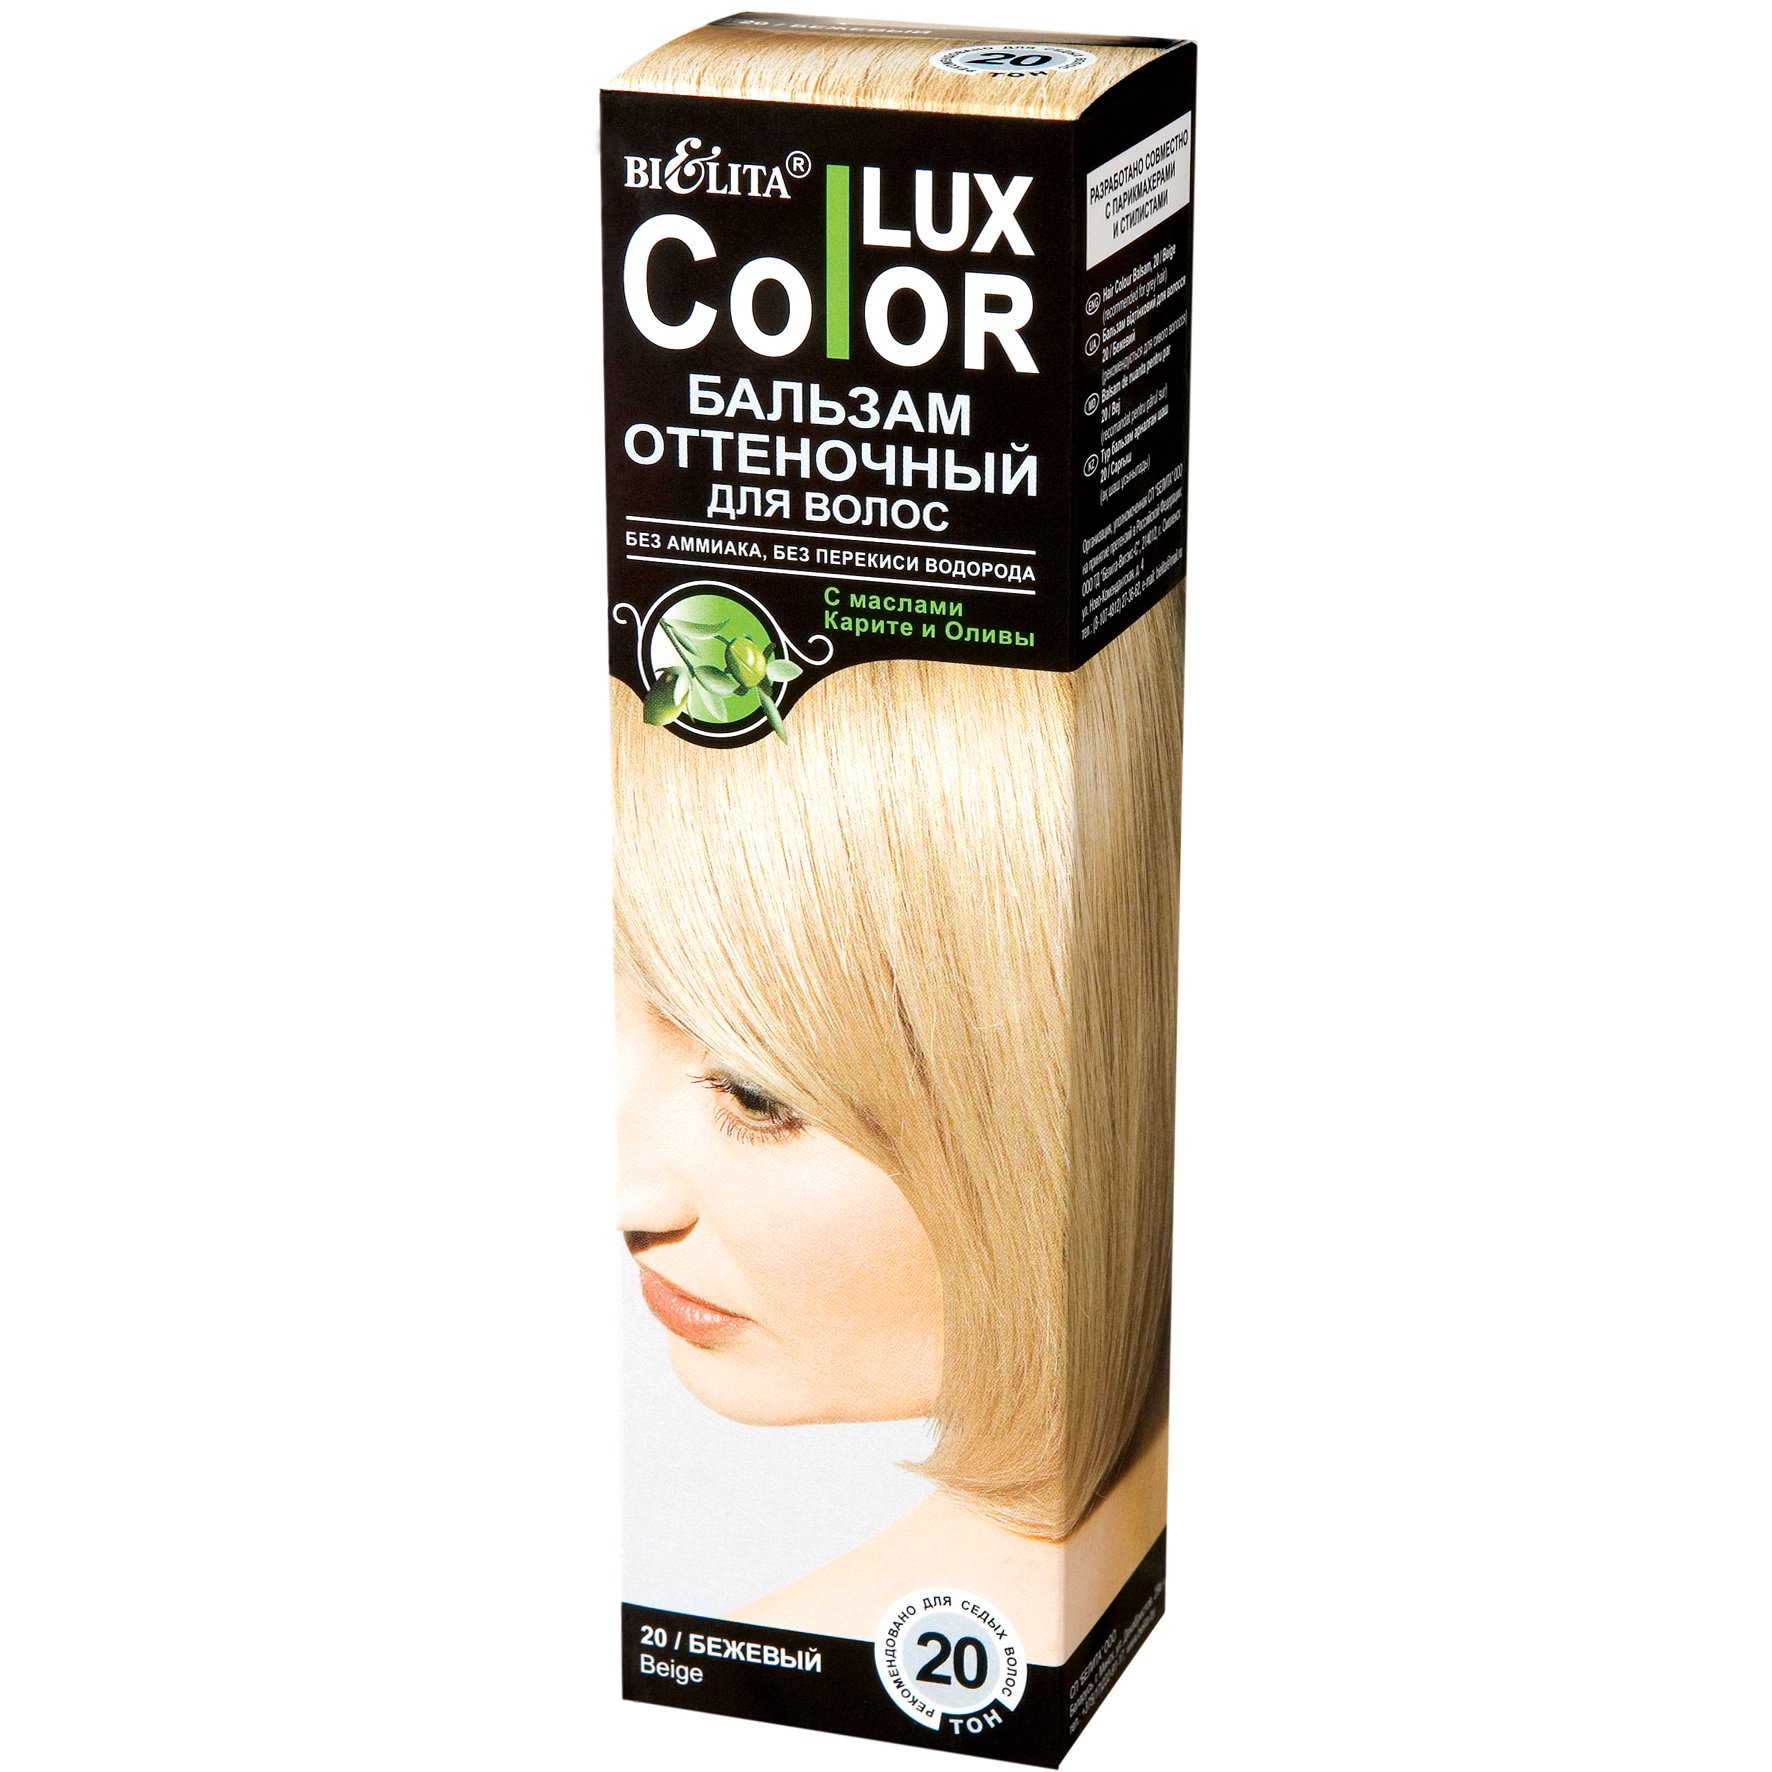 Белита Оттеночный бальзам для волос «COLOR LUX» тон 20-ann_img